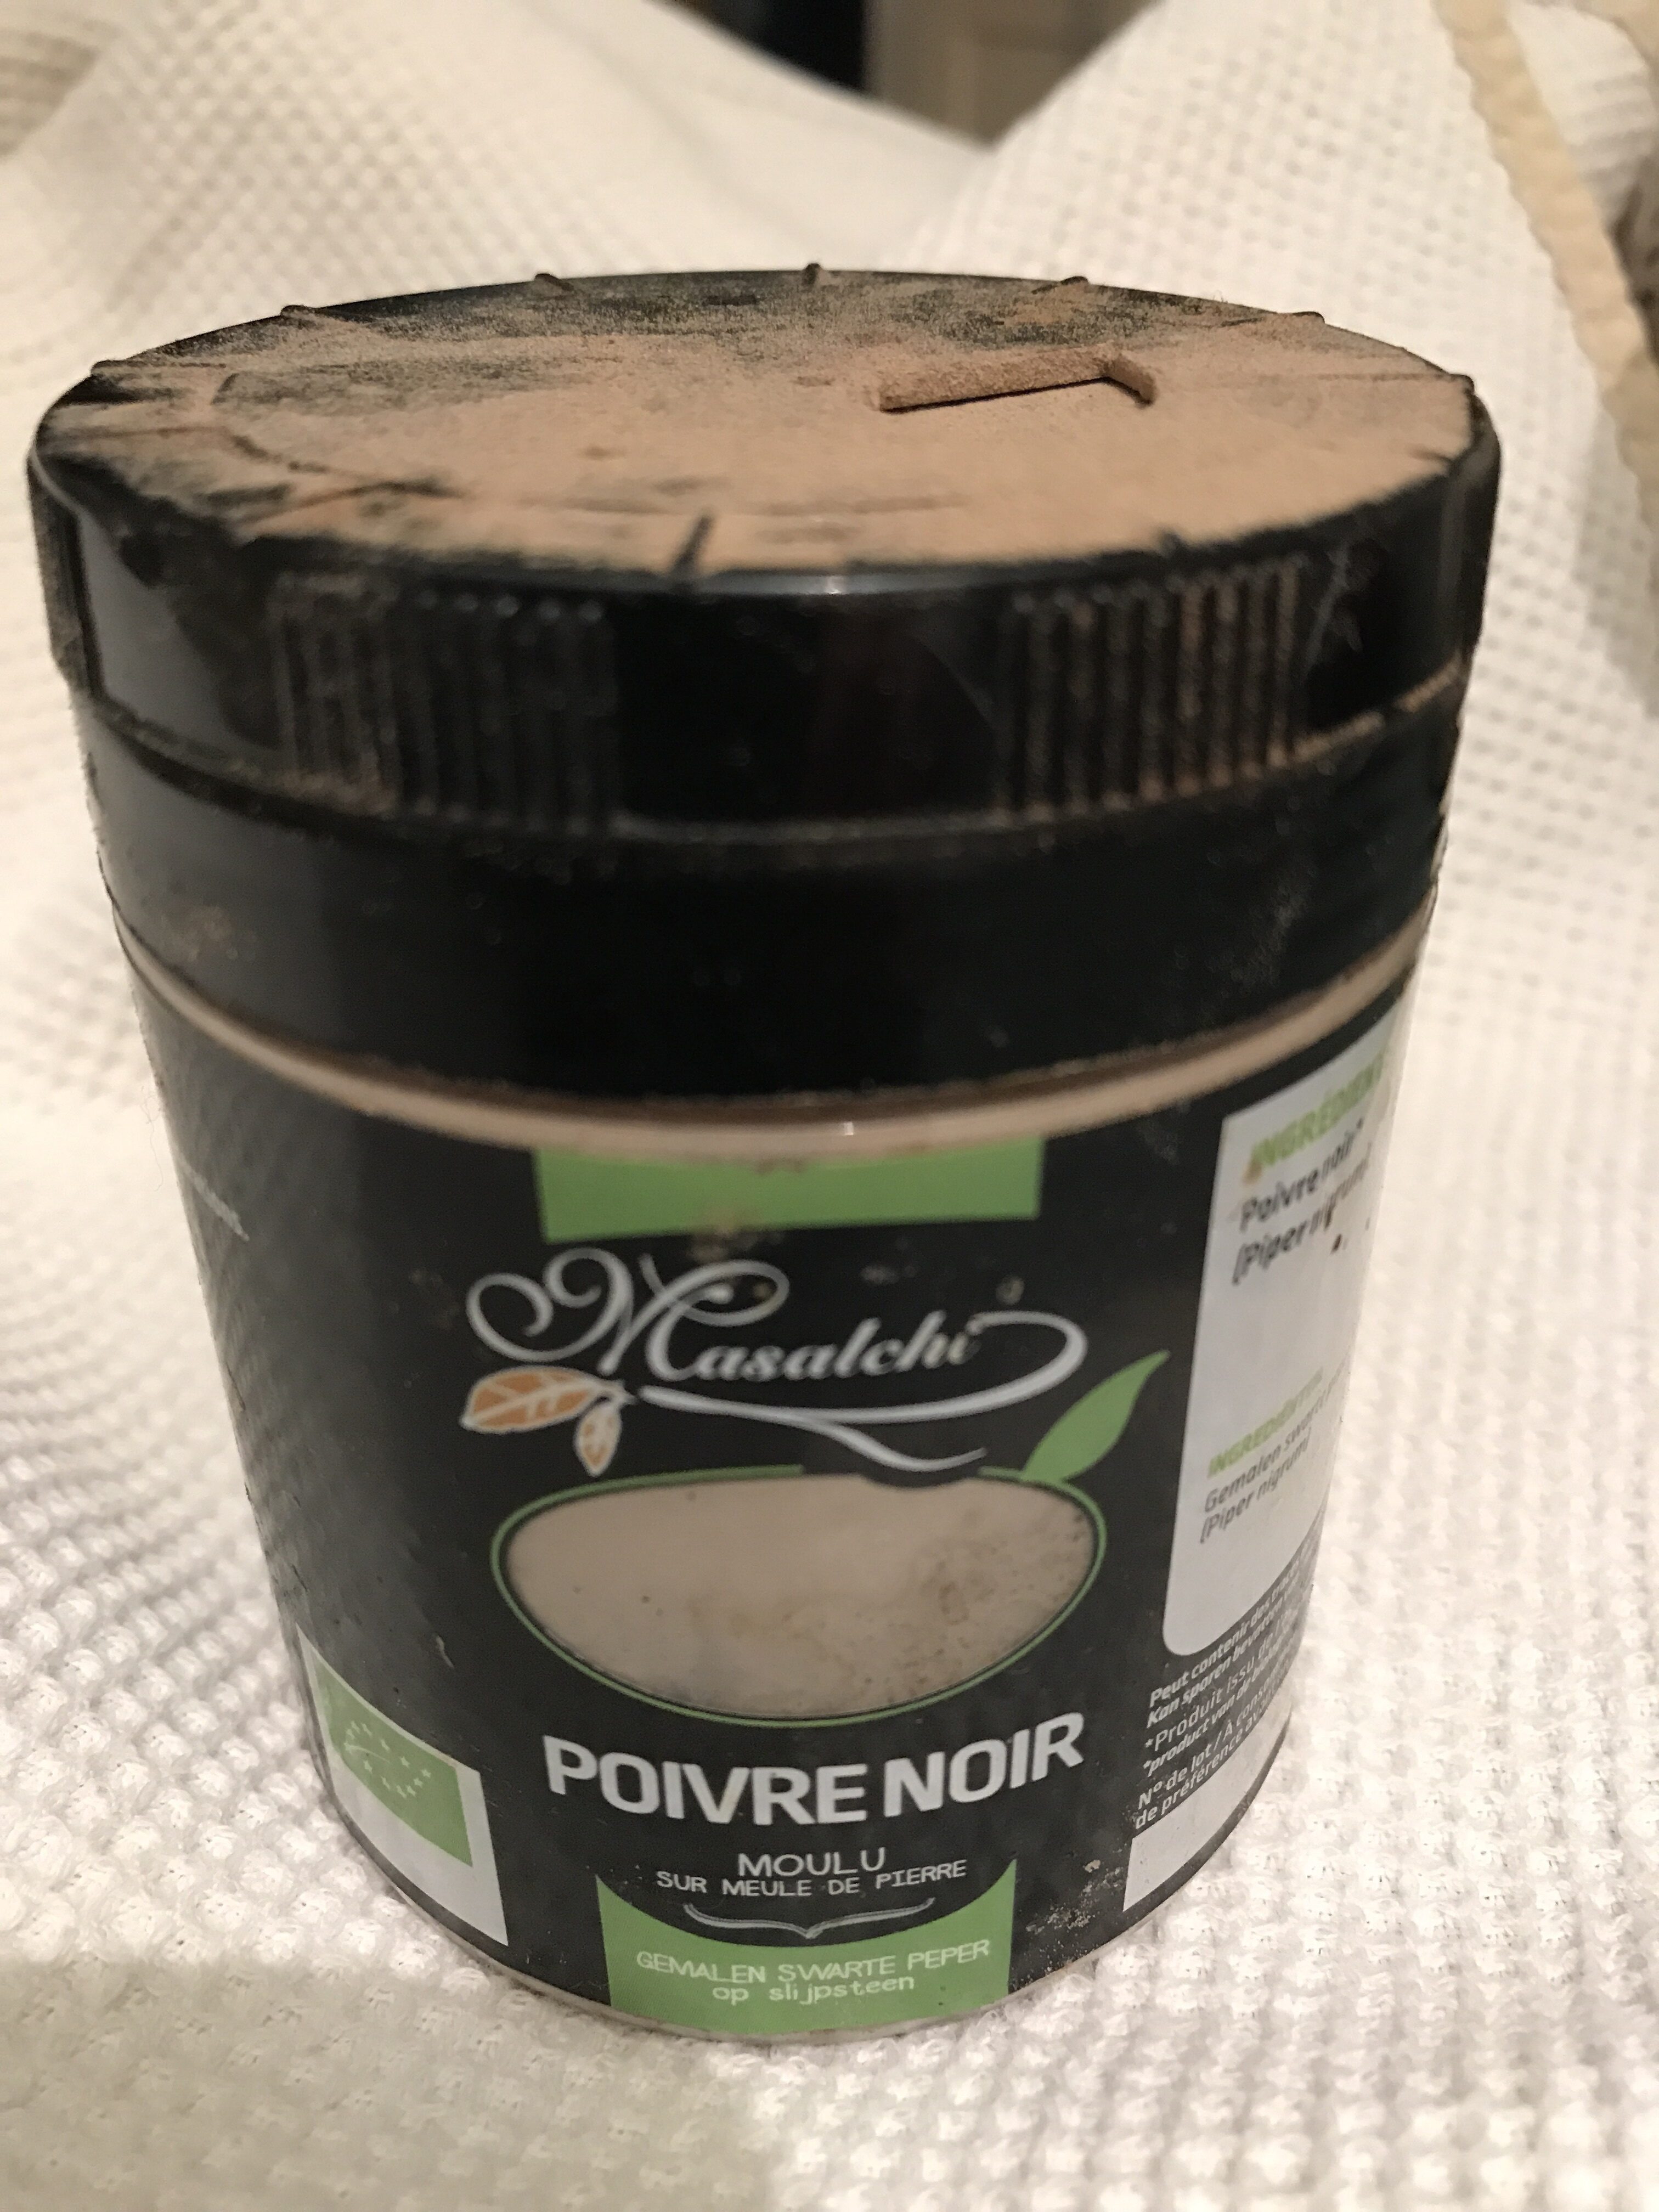 Poivre noir moulu - Product - fr